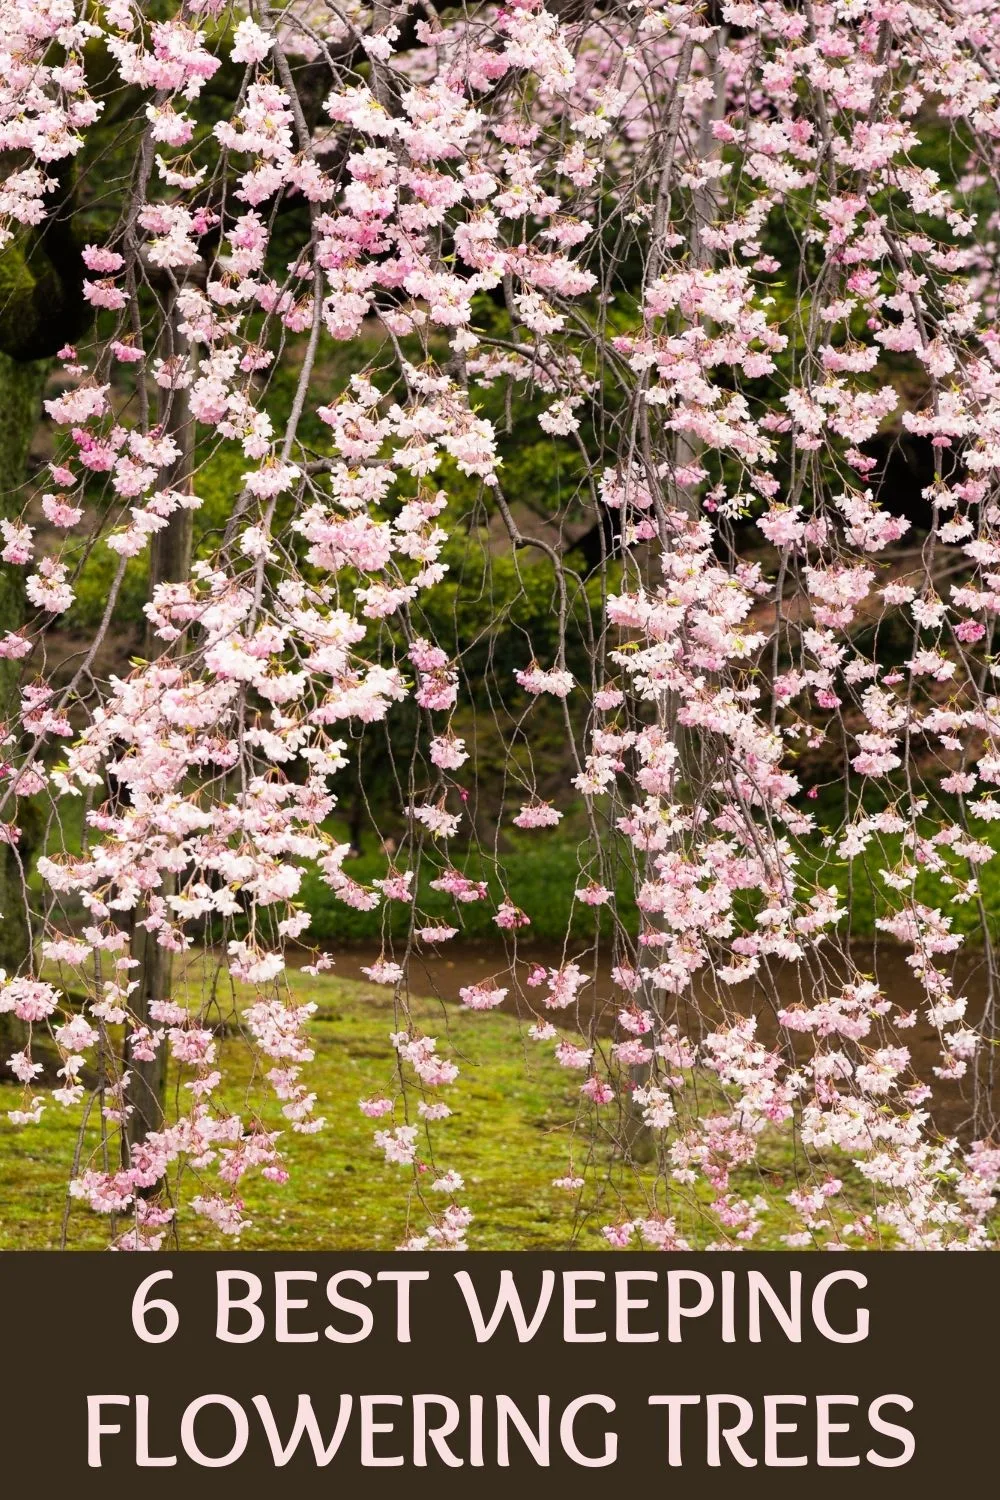 6 bet weping flowering trees